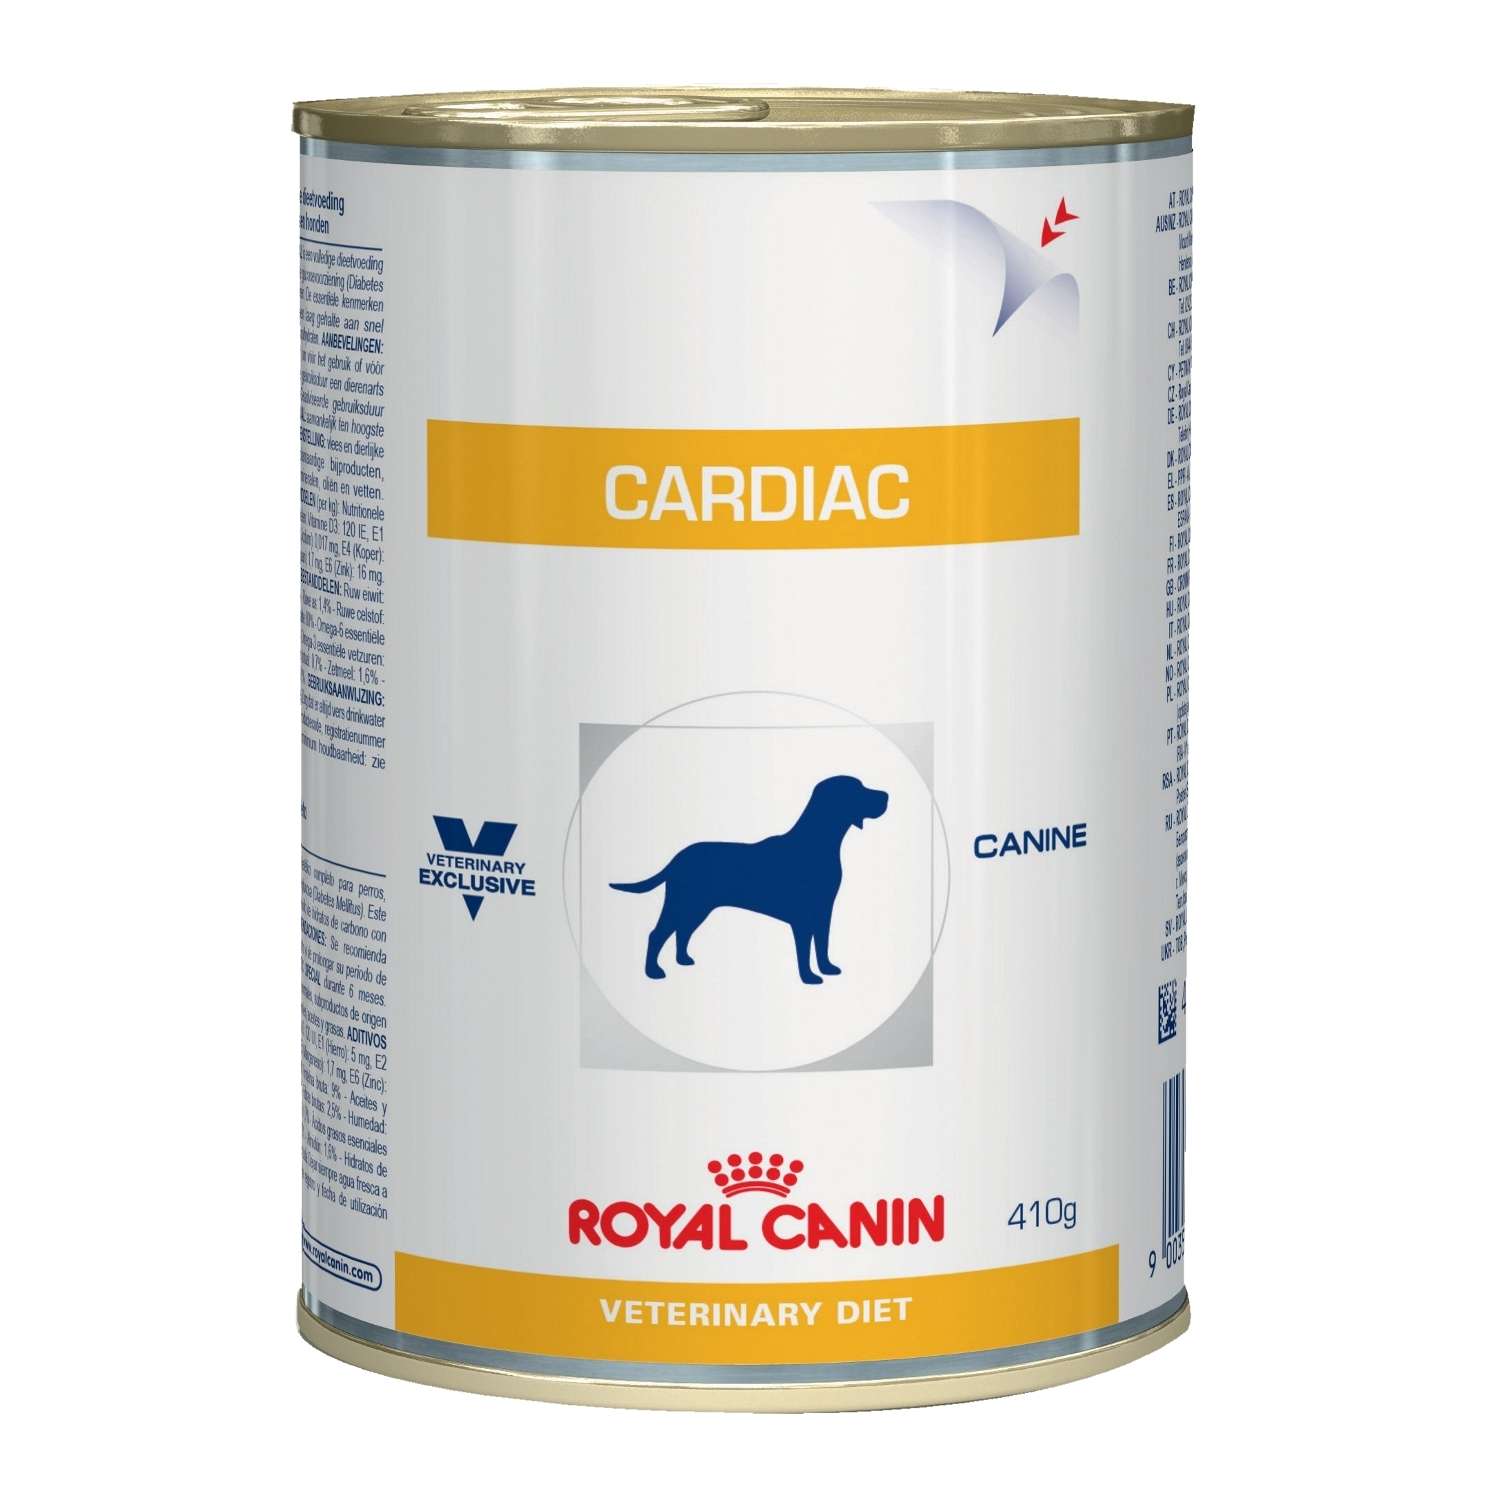 Корм для собак ROYAL CANIN Cardiac при сердечной недостаточности консервированный 410г - фото 1